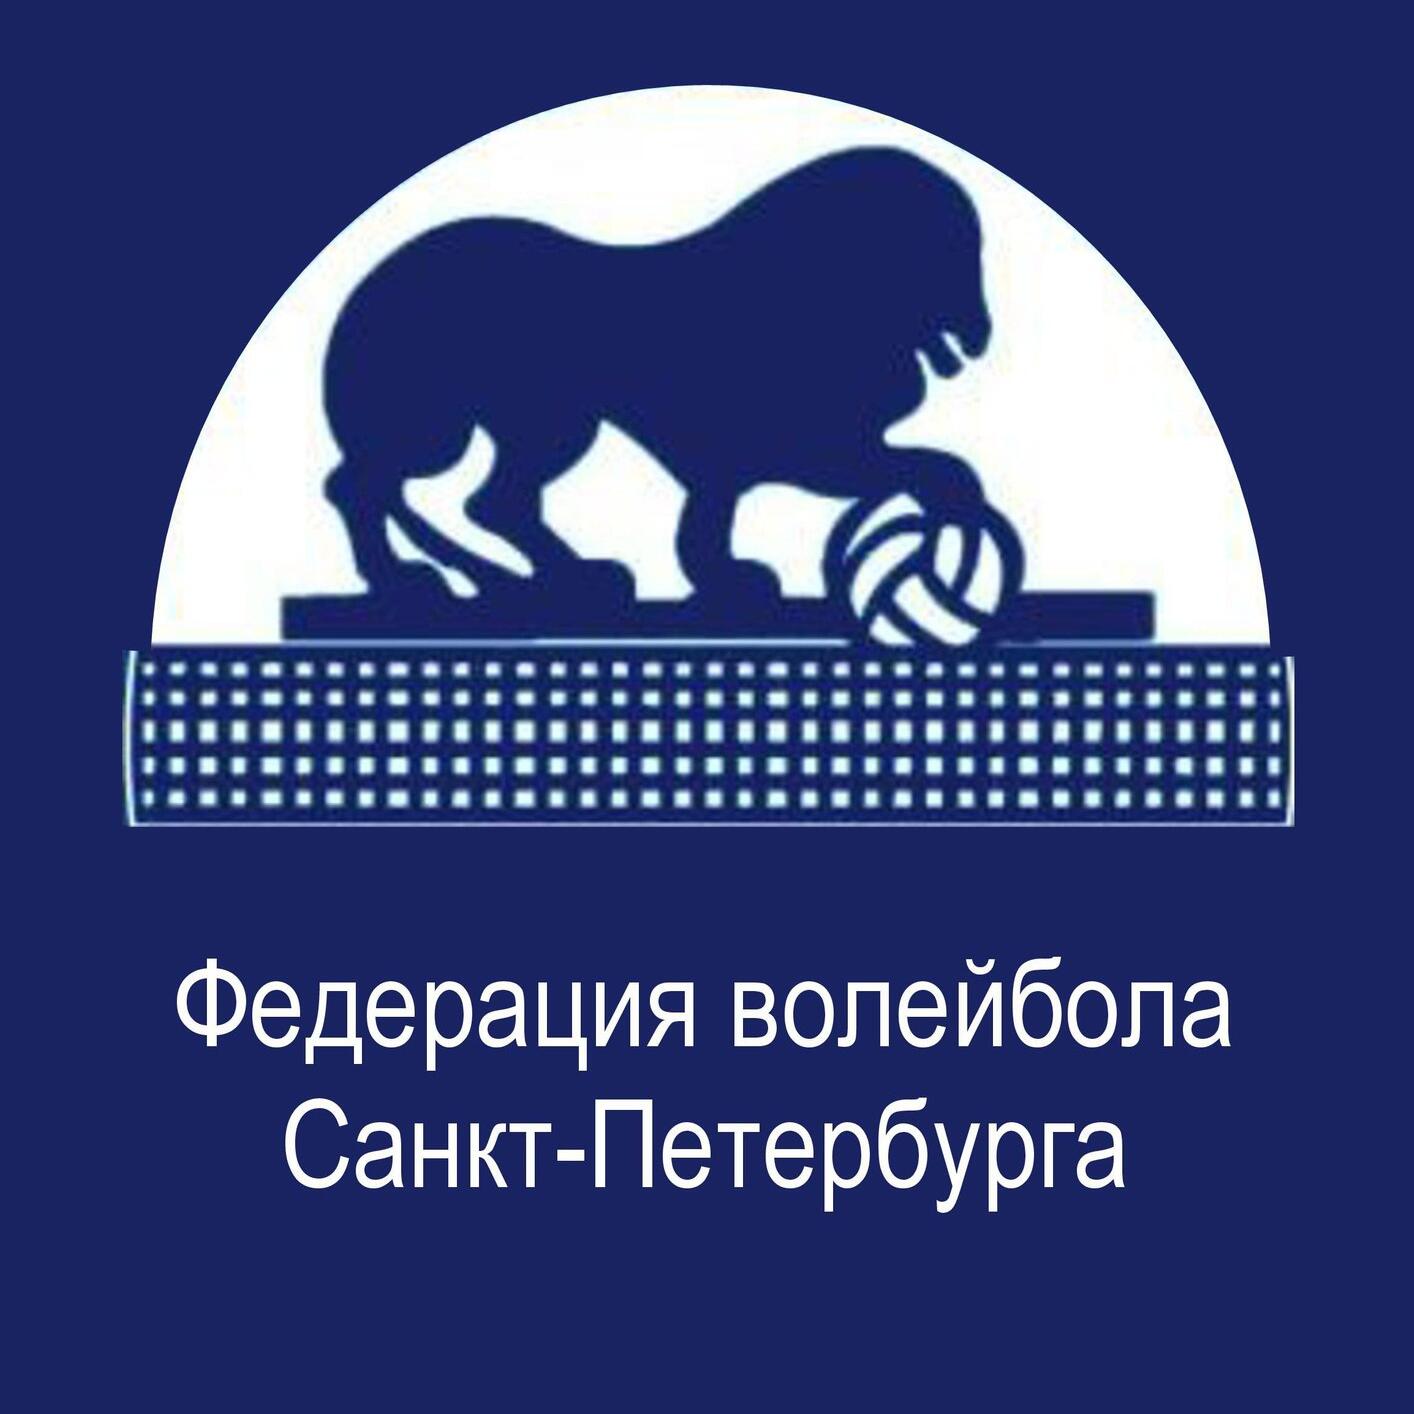 Федерация волейбола Санкт-Петербурга